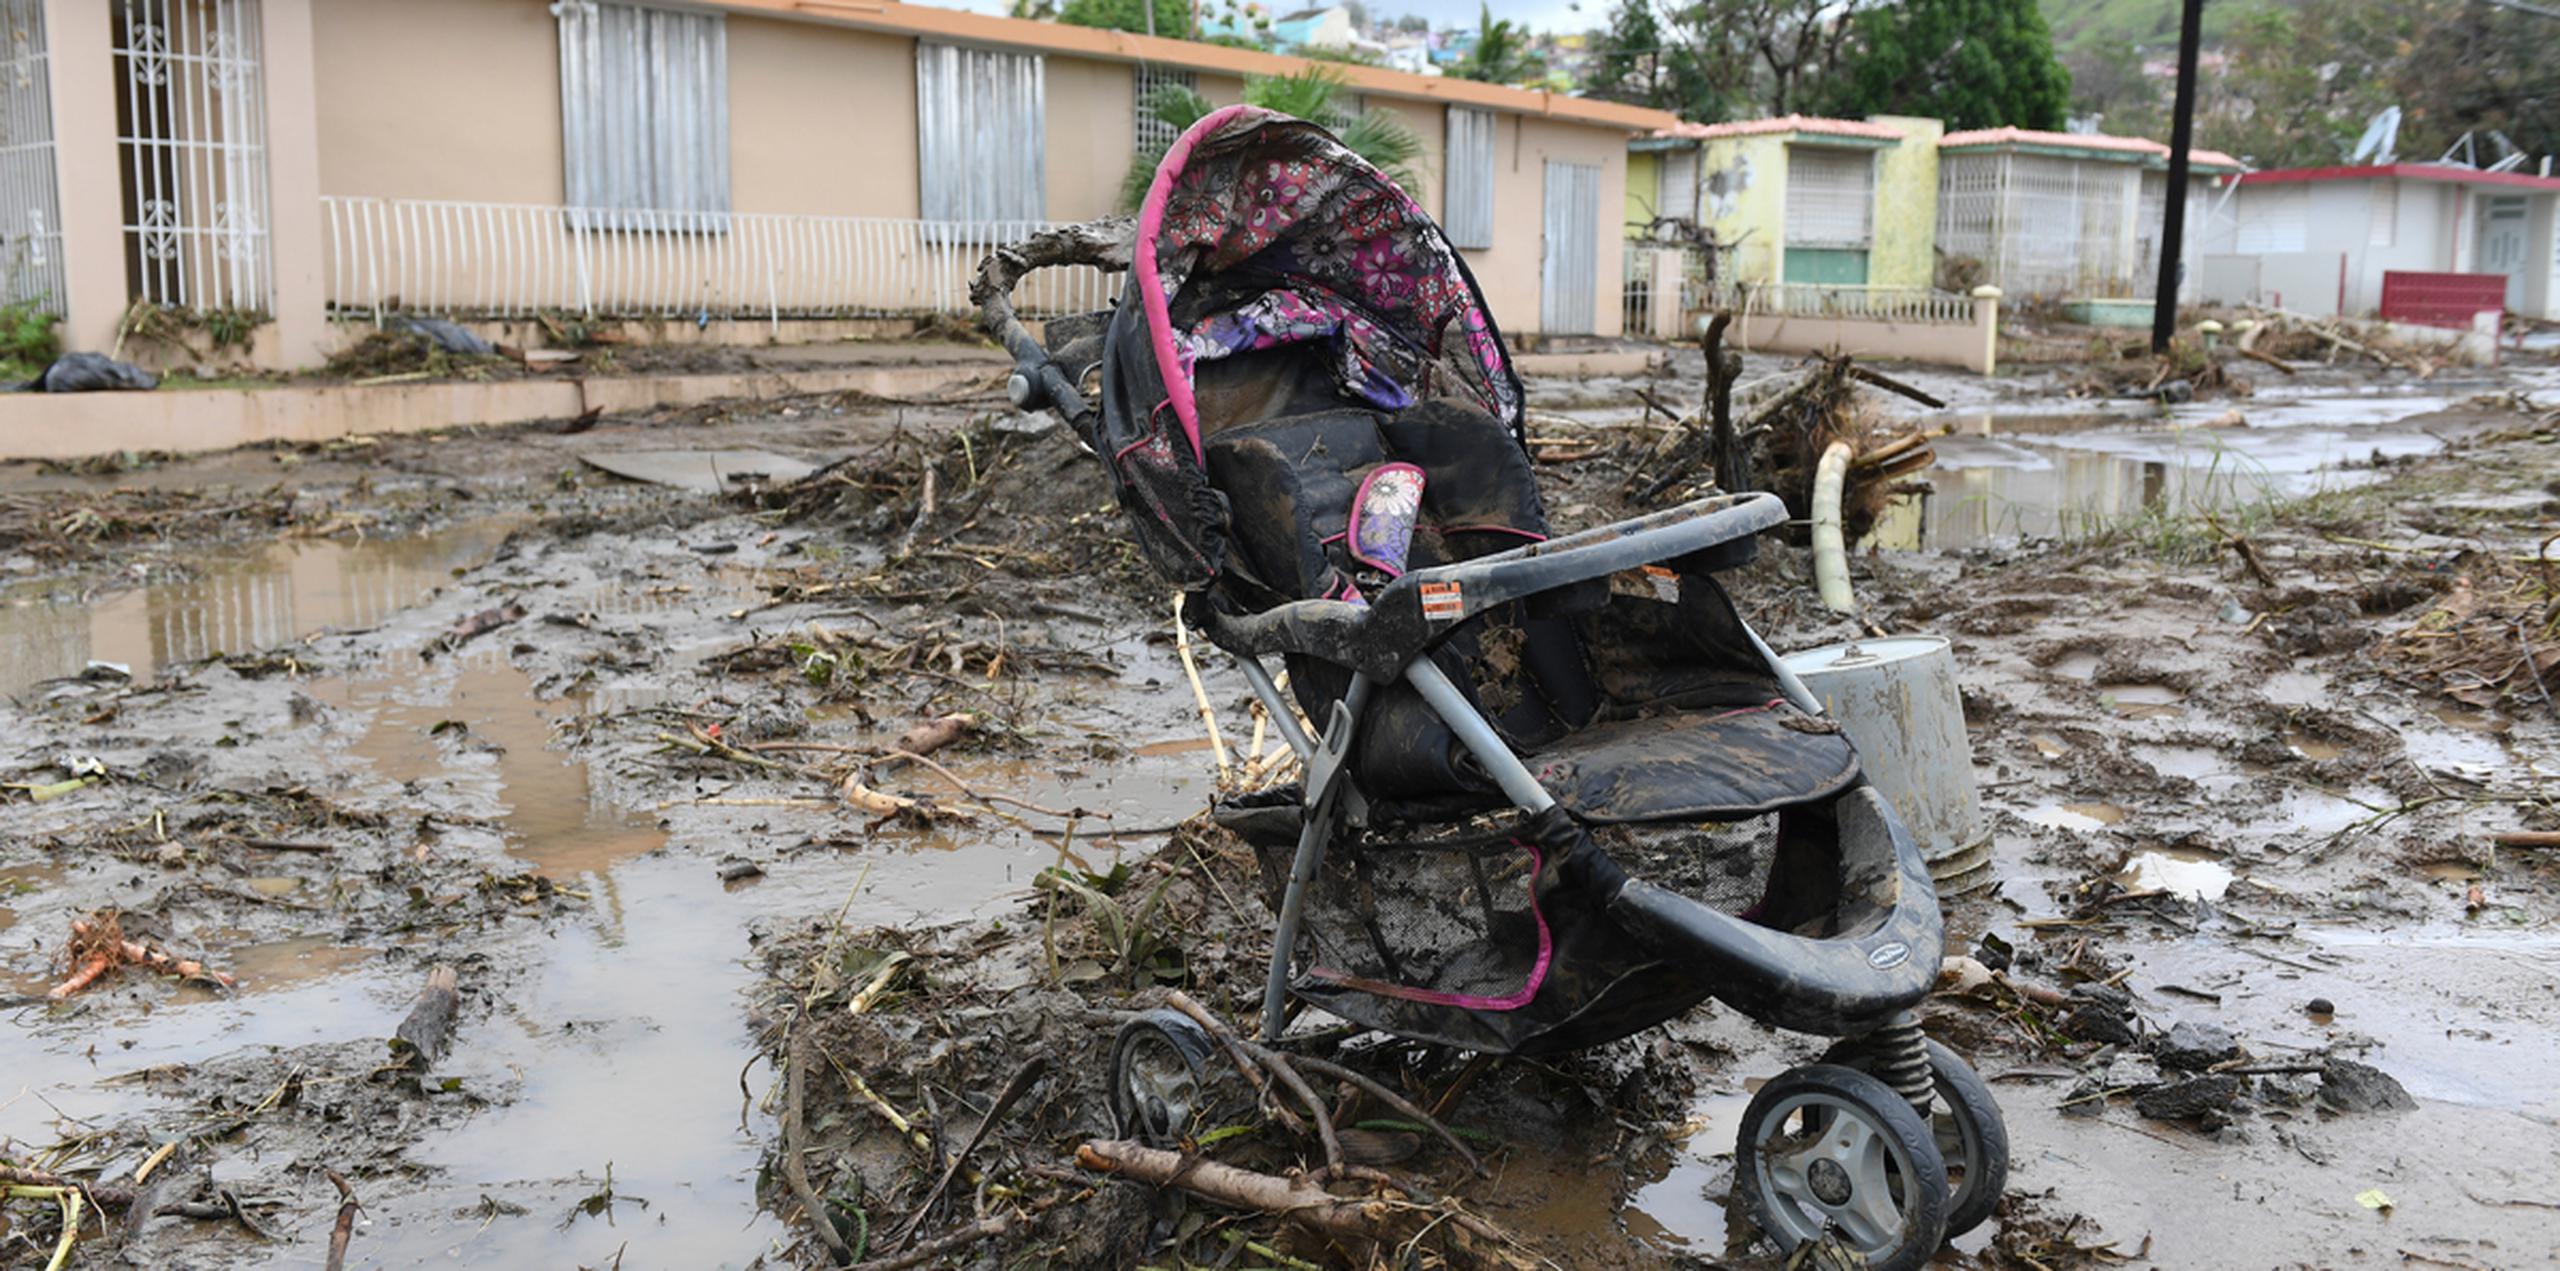 Fuera de breves menciones en CNN y NBC, la devastación del huracán María no fue tema de conversación en los medios estadounidenses en los programas dominicales. (tony.zayas@gfrmedia.com)